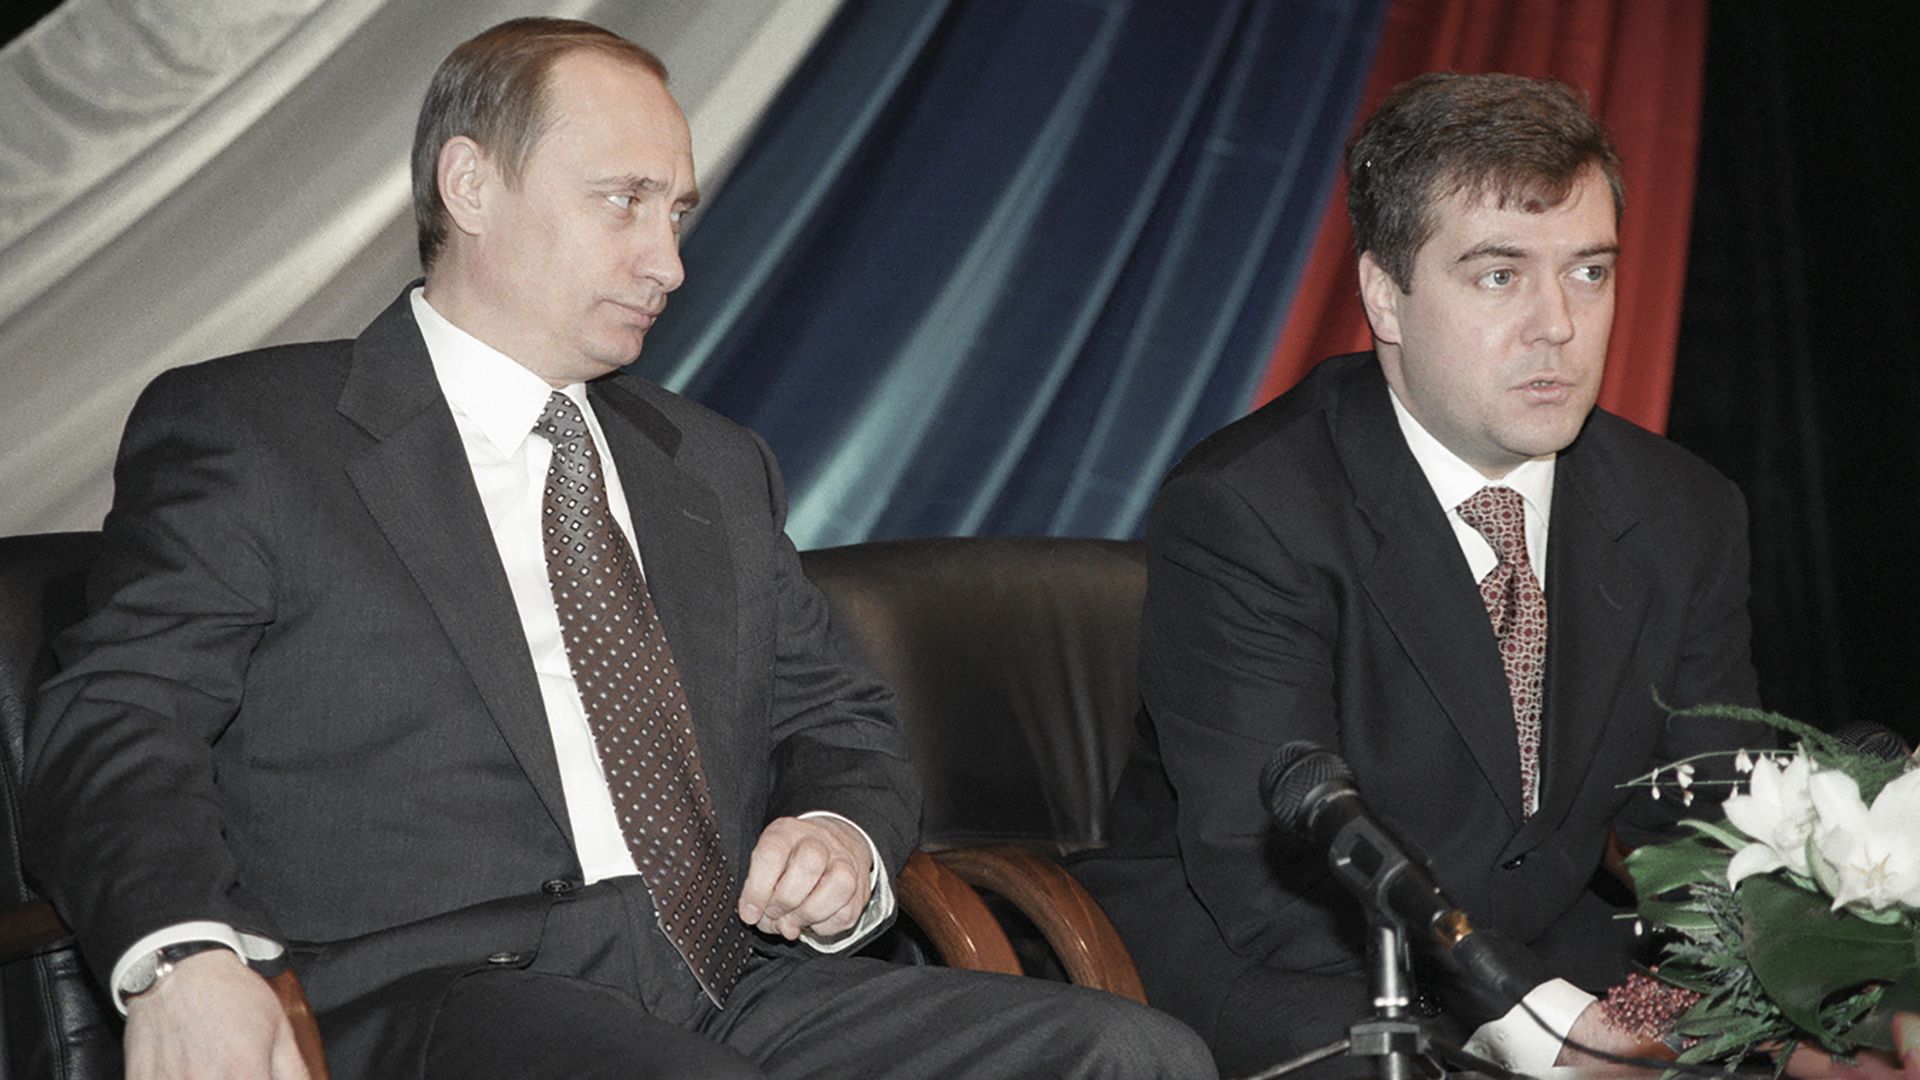 Vladimir Putin met Dmitry Medvedev in 1990